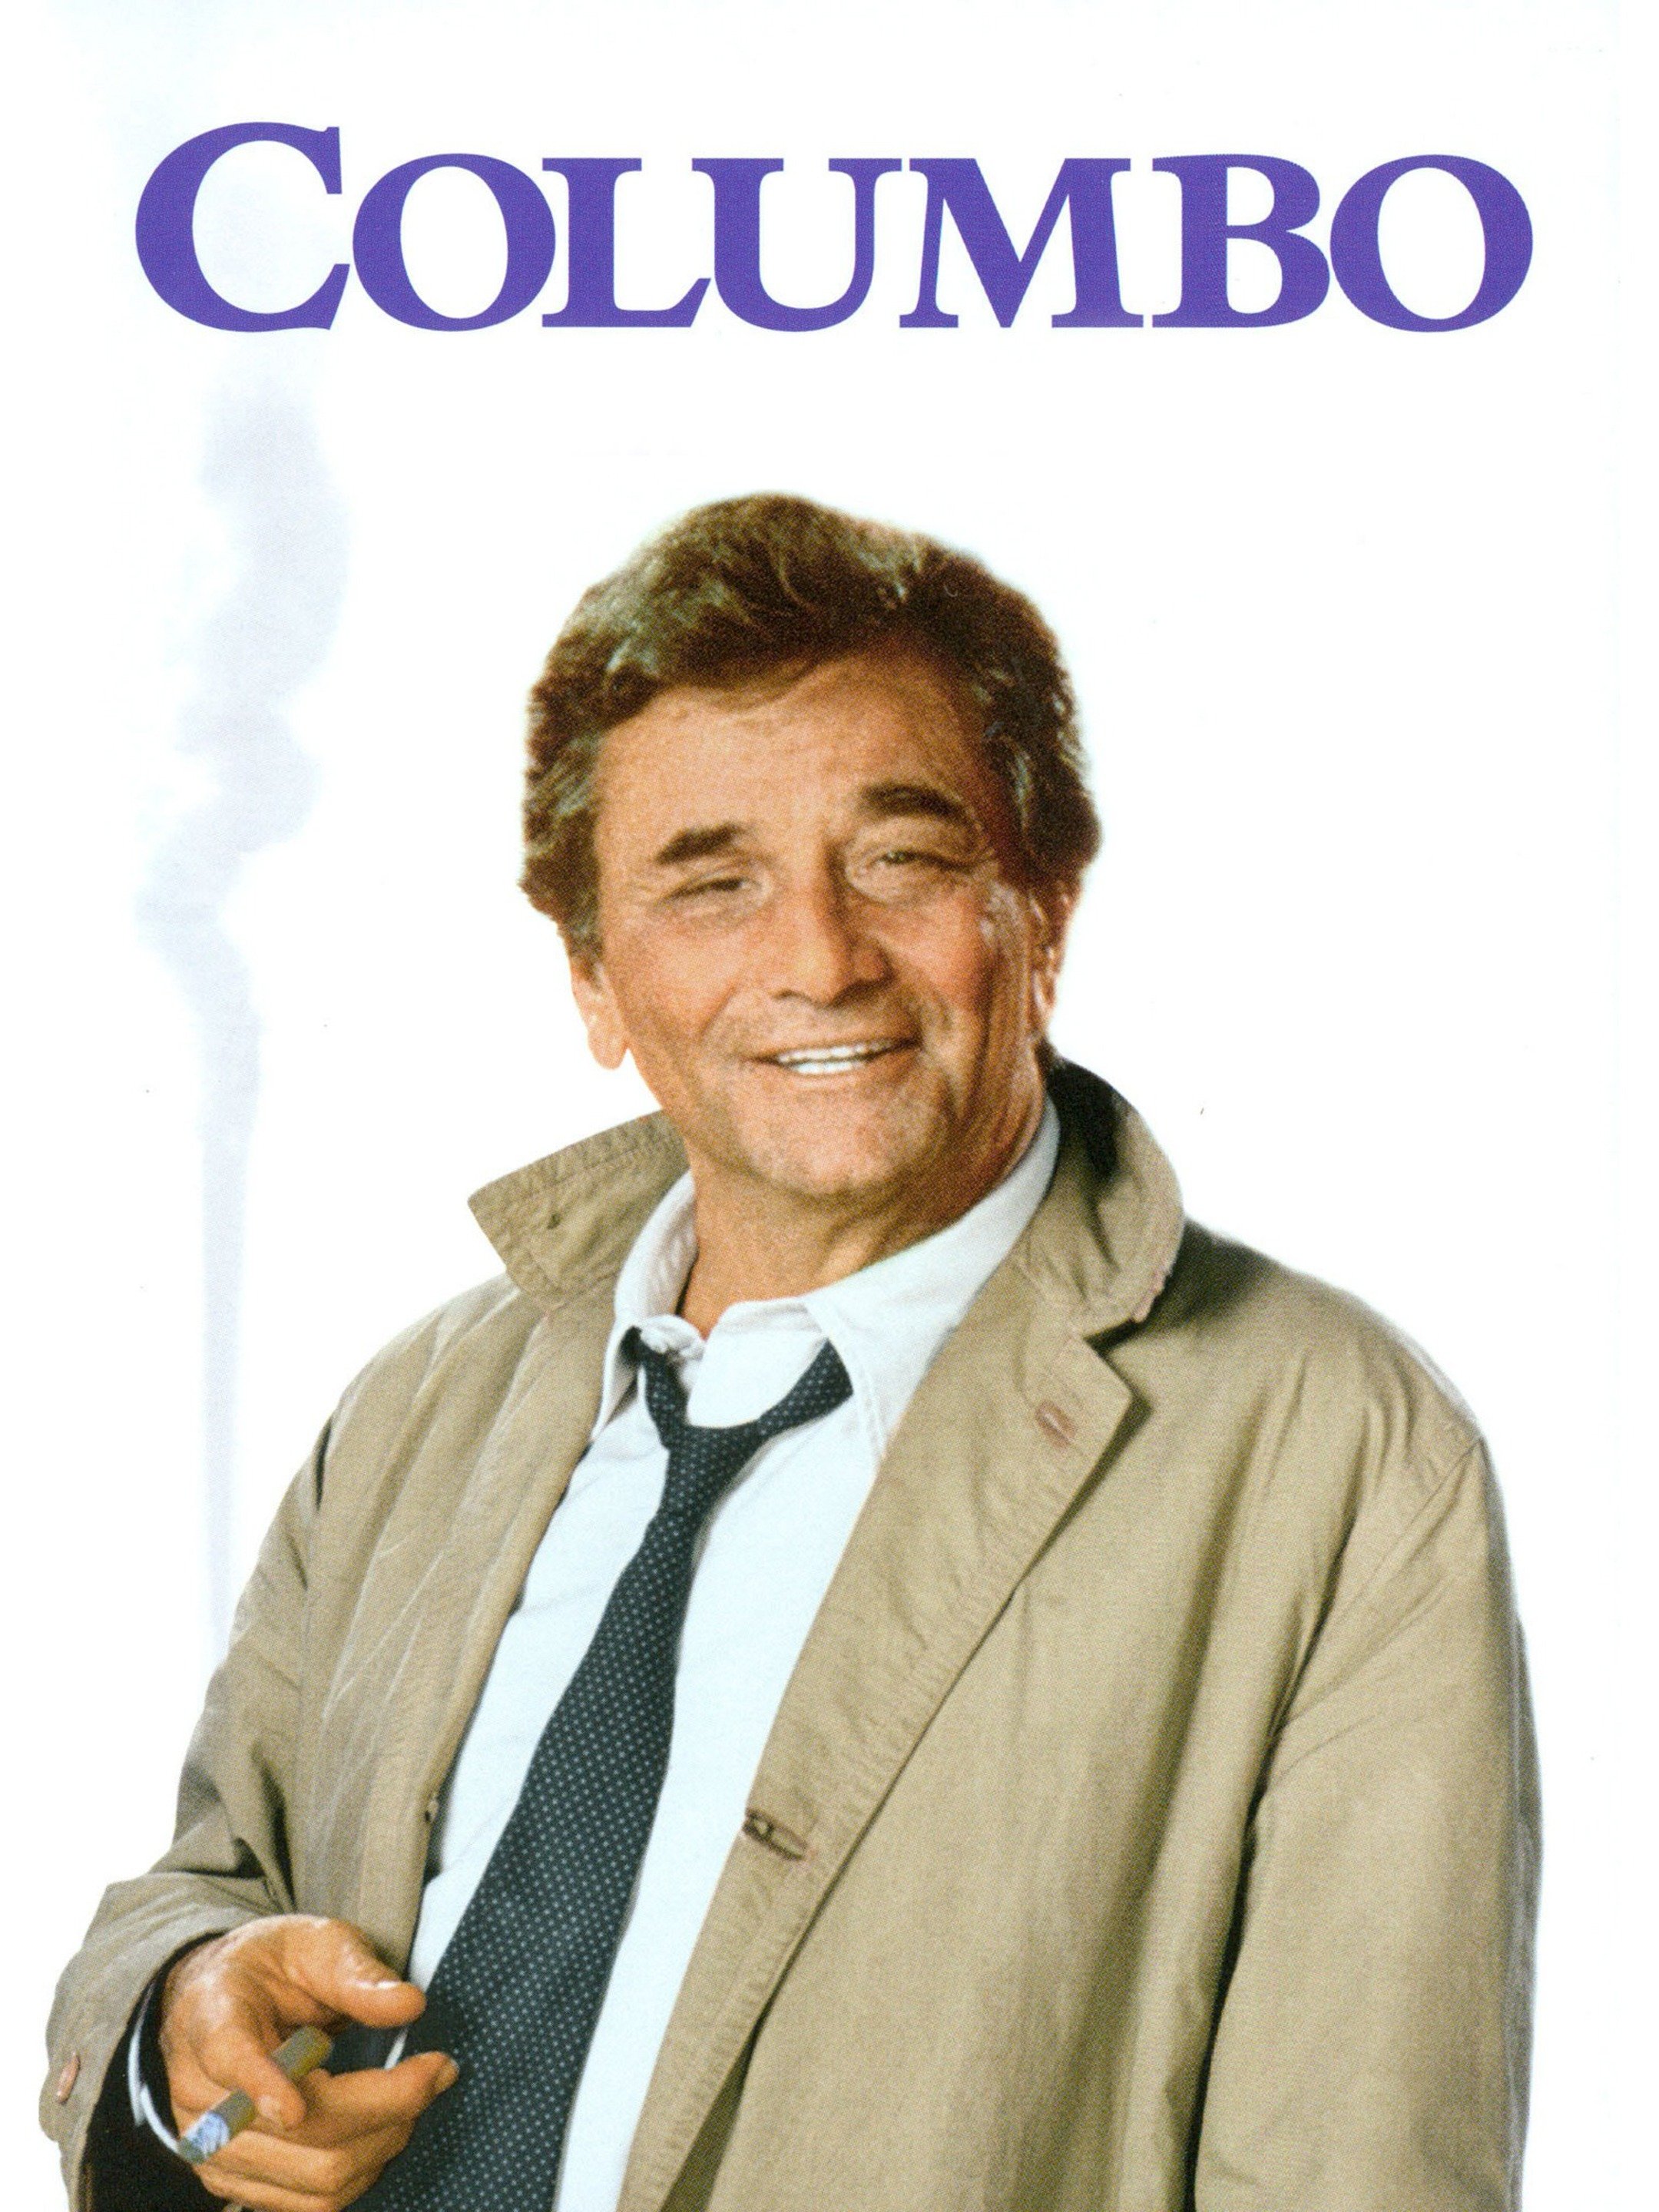 Columbo Season 5, Episode 4